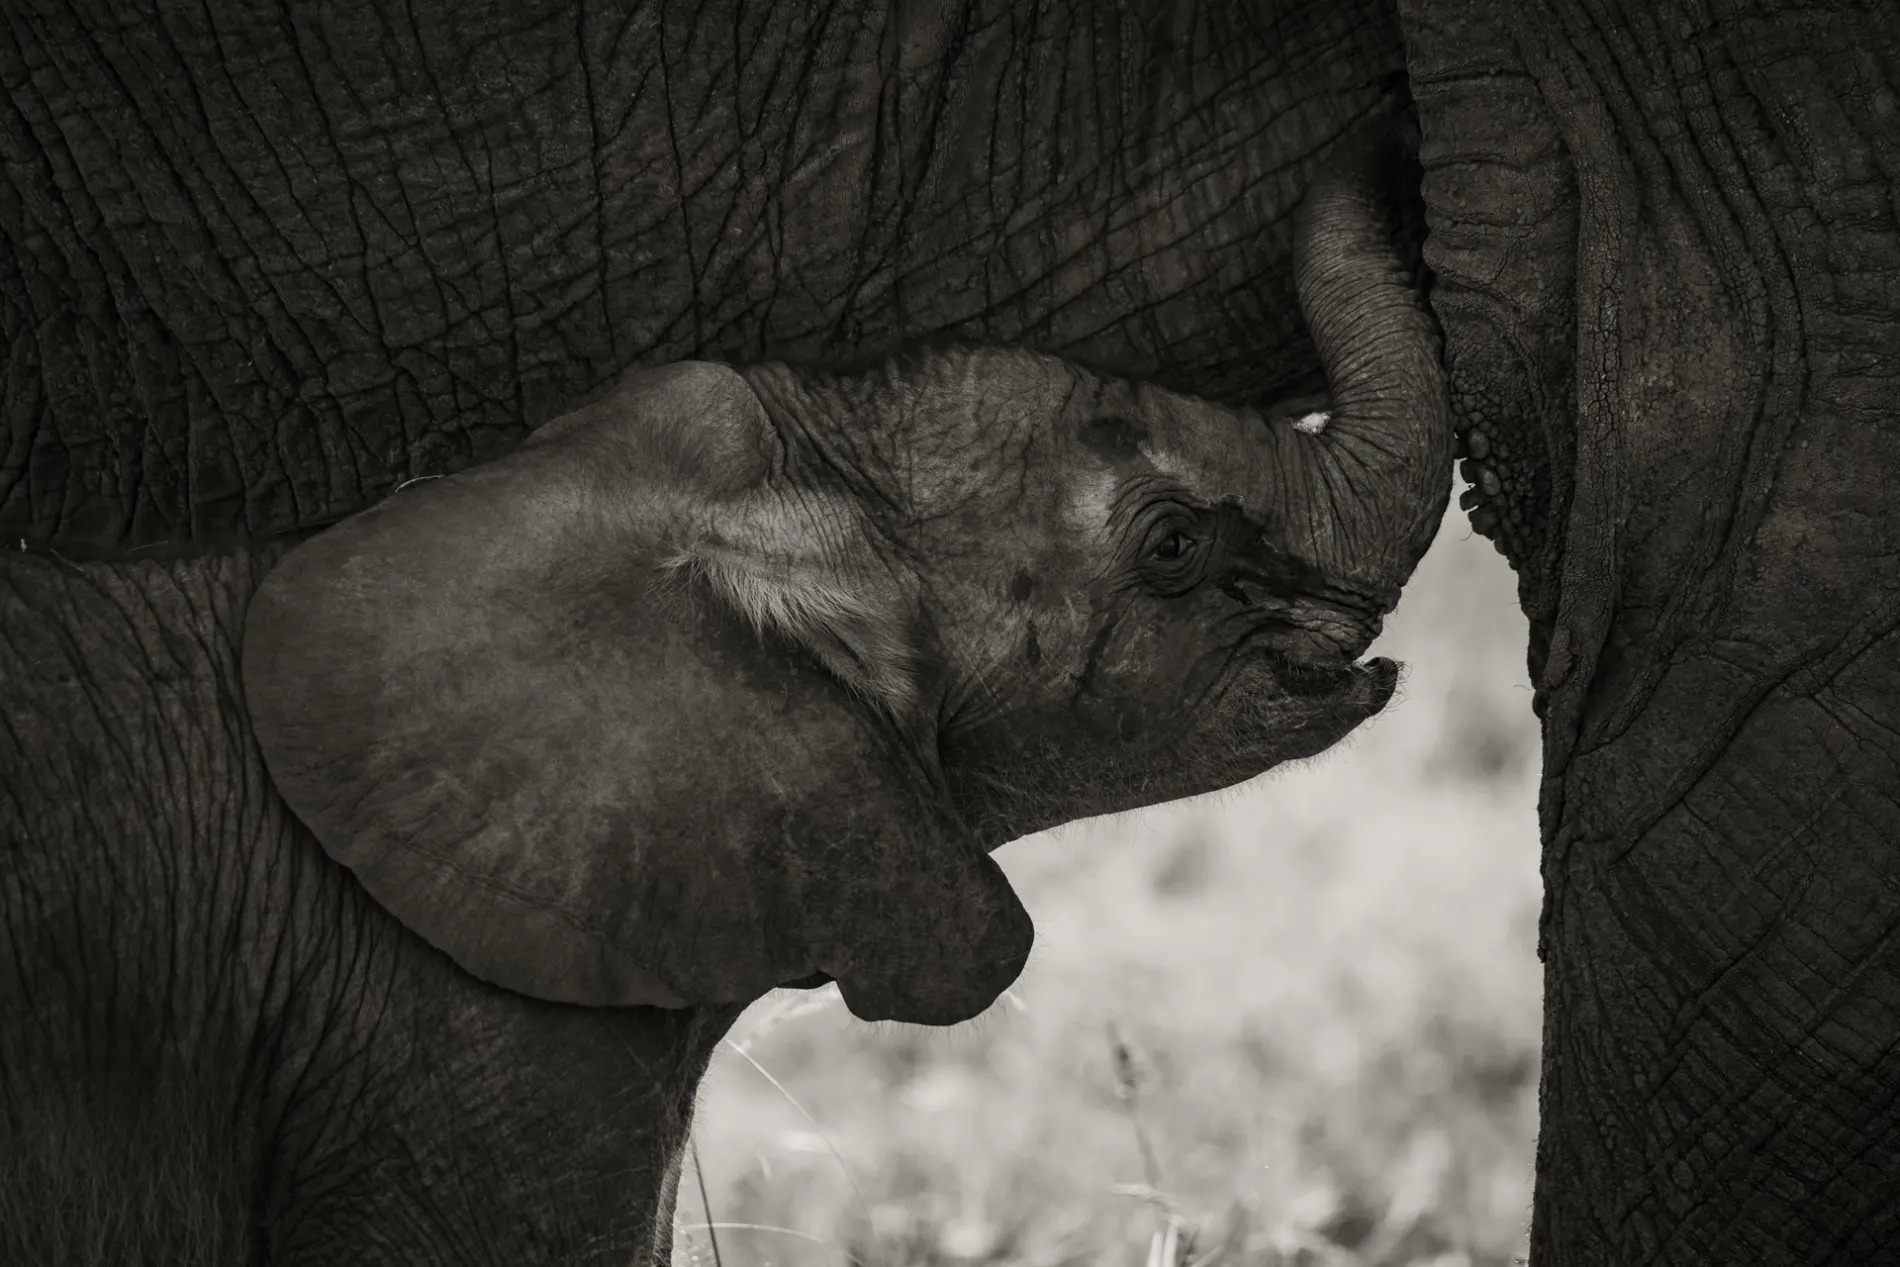 Baby Elephant sucking